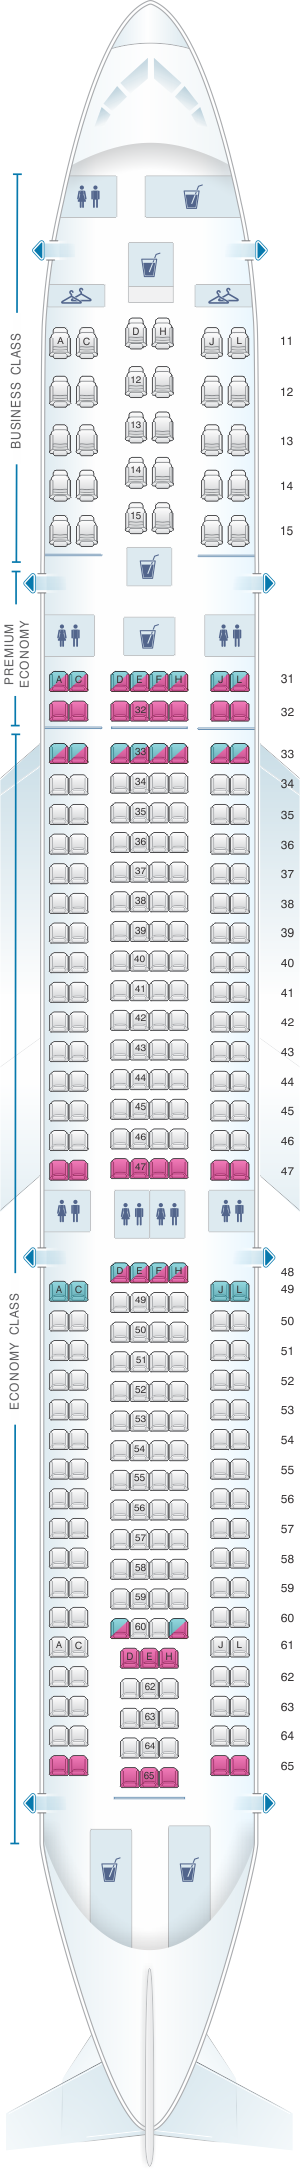 Seat Map Air China Airbus A330 300 301pax